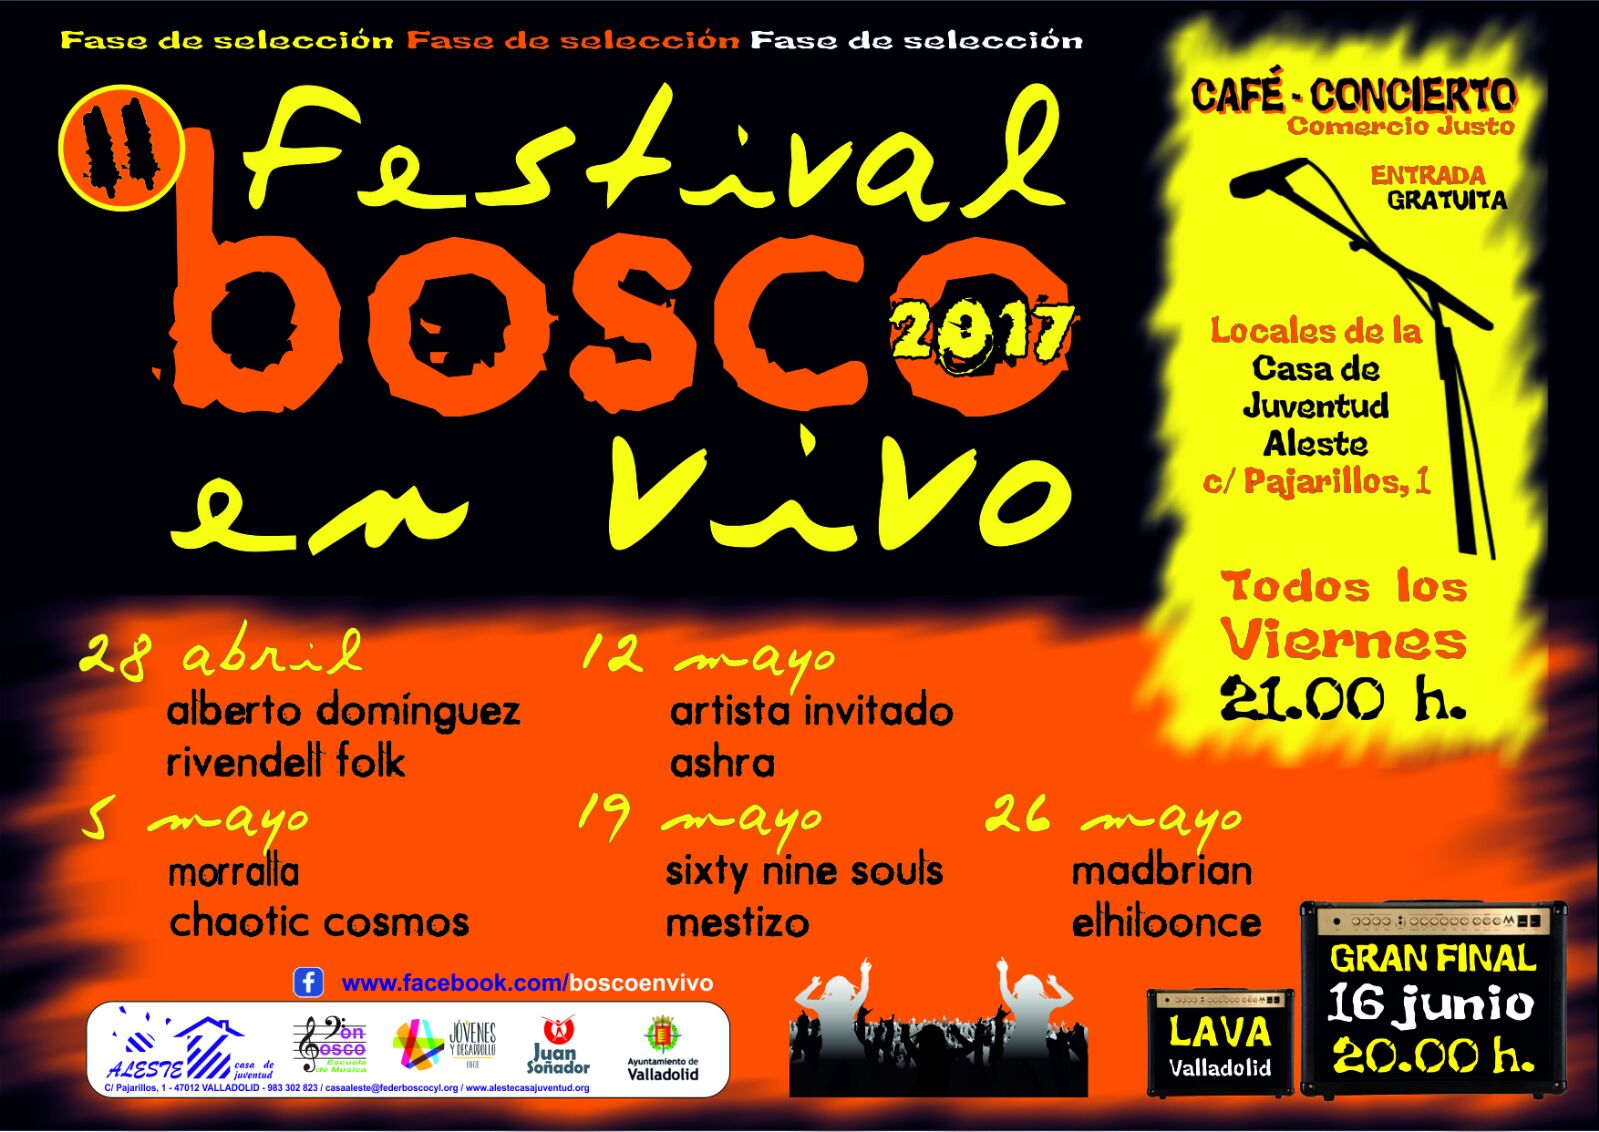 Comienza la fase de selección del II Festival Musical "Bosco en Vivo"